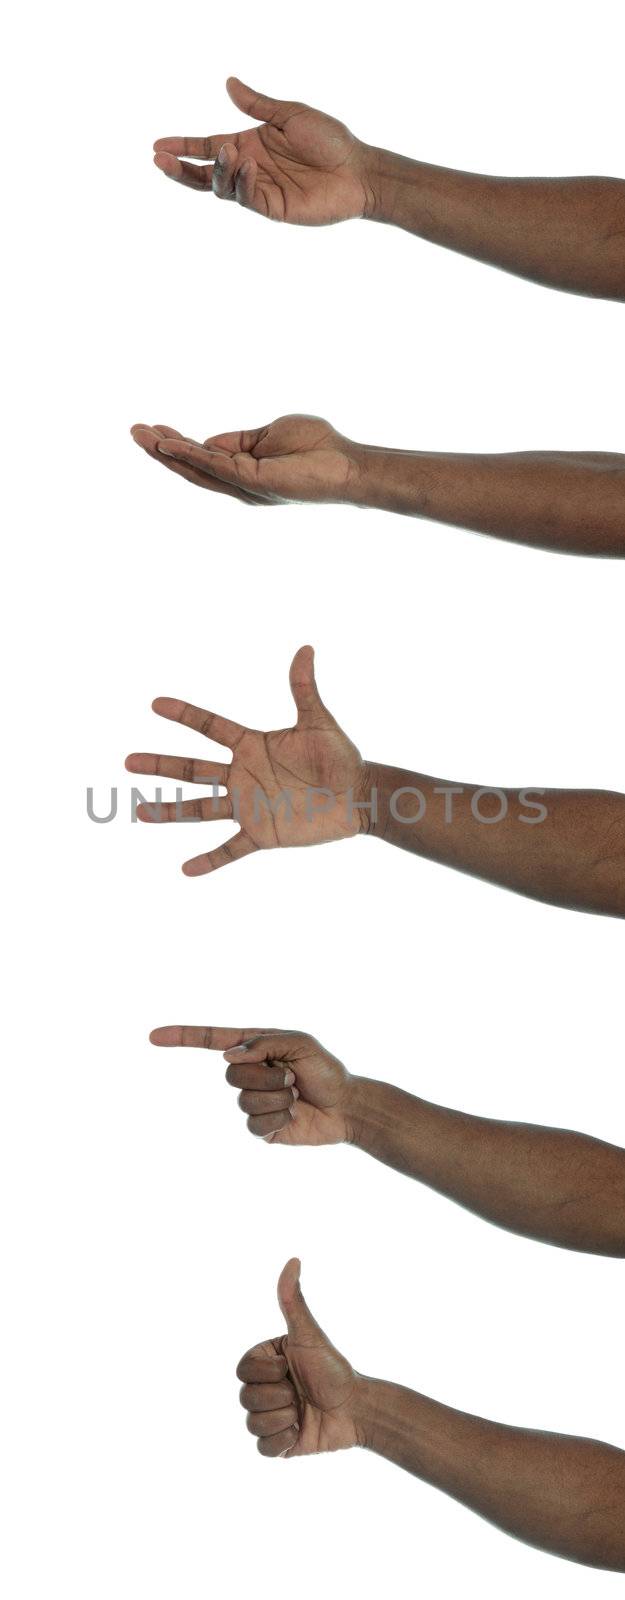 Dark-skinned hand gestures by kaarsten